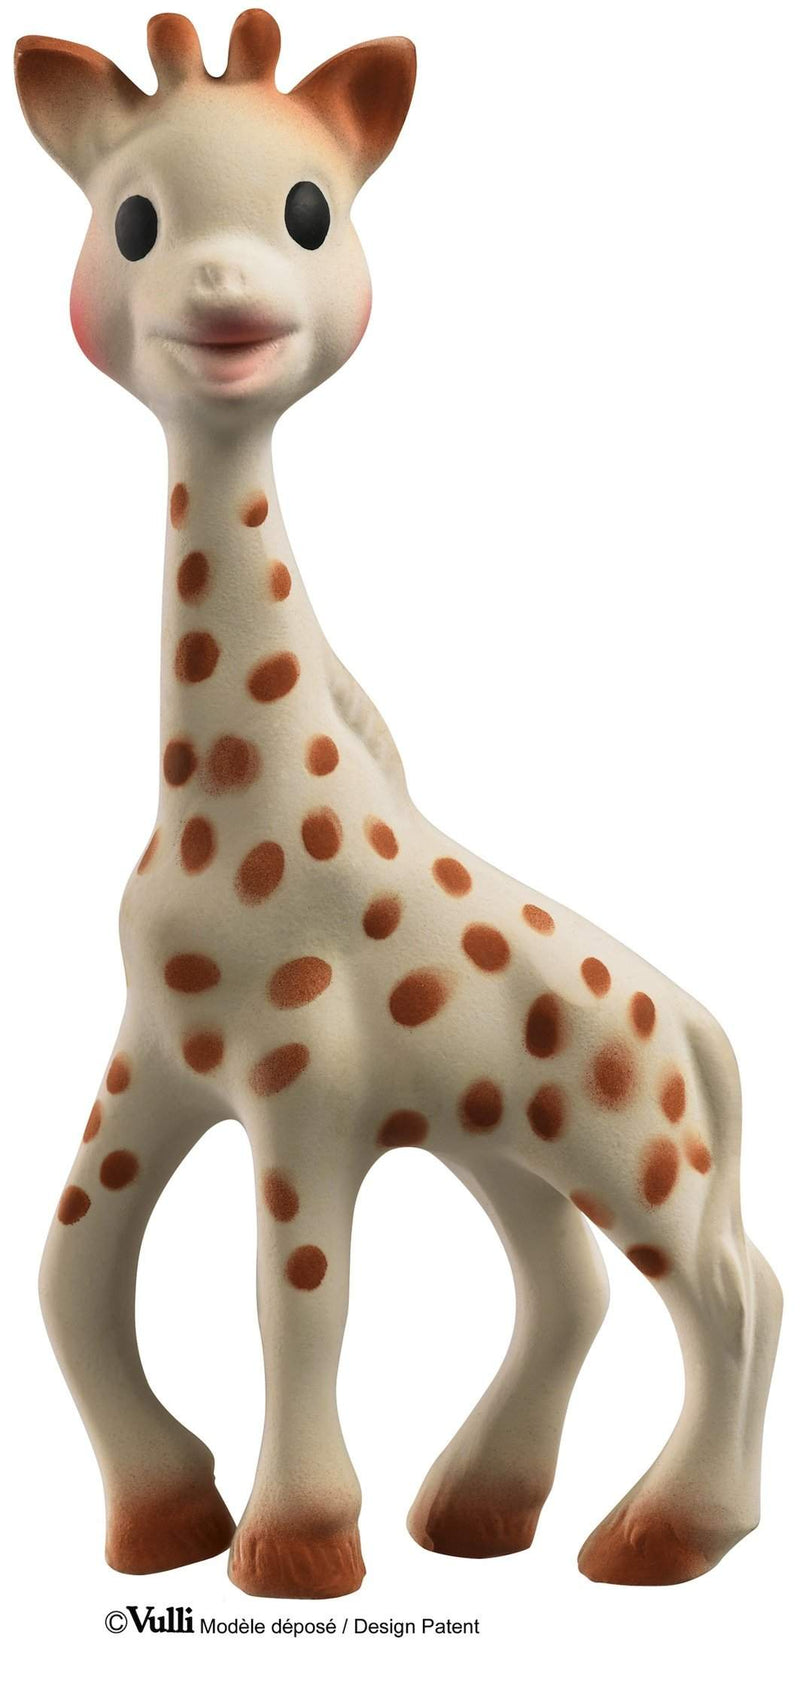 So Pure Sophie de Giraf-Sophie de Giraf-baby,bijtspeelgoed,kinderen,Sophie de Giraf